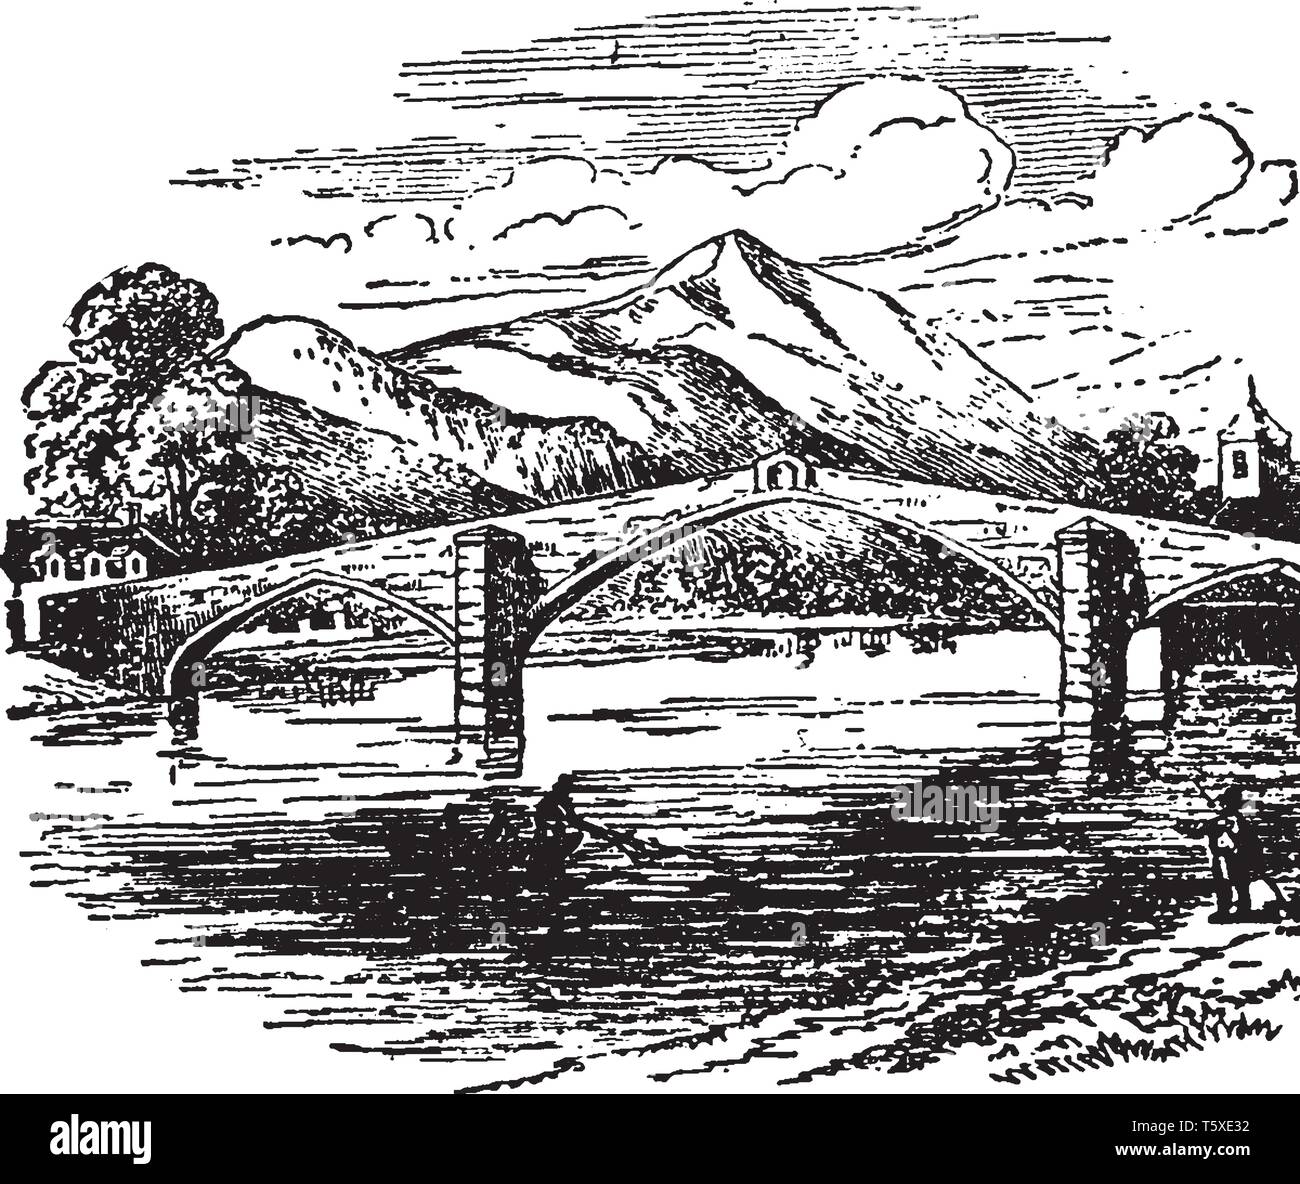 Trefriw Brücke, die von Inigo Jones im Jahre 1634 eingerichtet wurde, vintage Strichzeichnung oder Gravur Abbildung. Stock Vektor